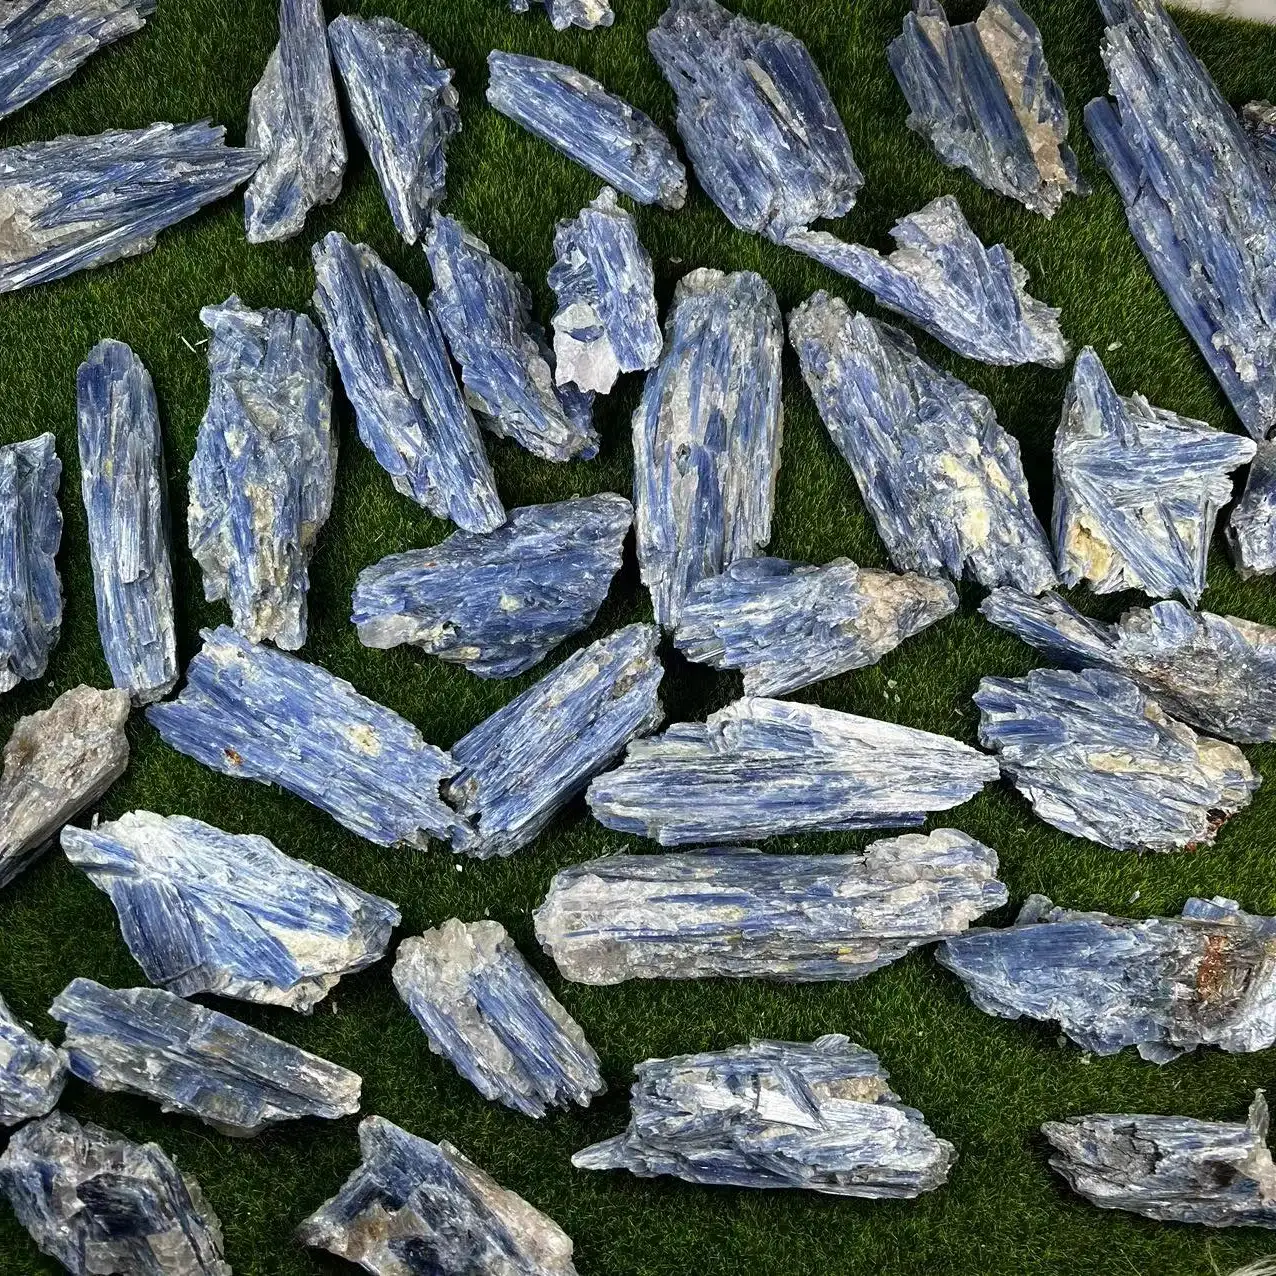 Бразильский натуральный хрустальный кластер, необработанный минерал, Голубой Кианит, грубый камень небольшого размера, образец для образования, коробка для сбора